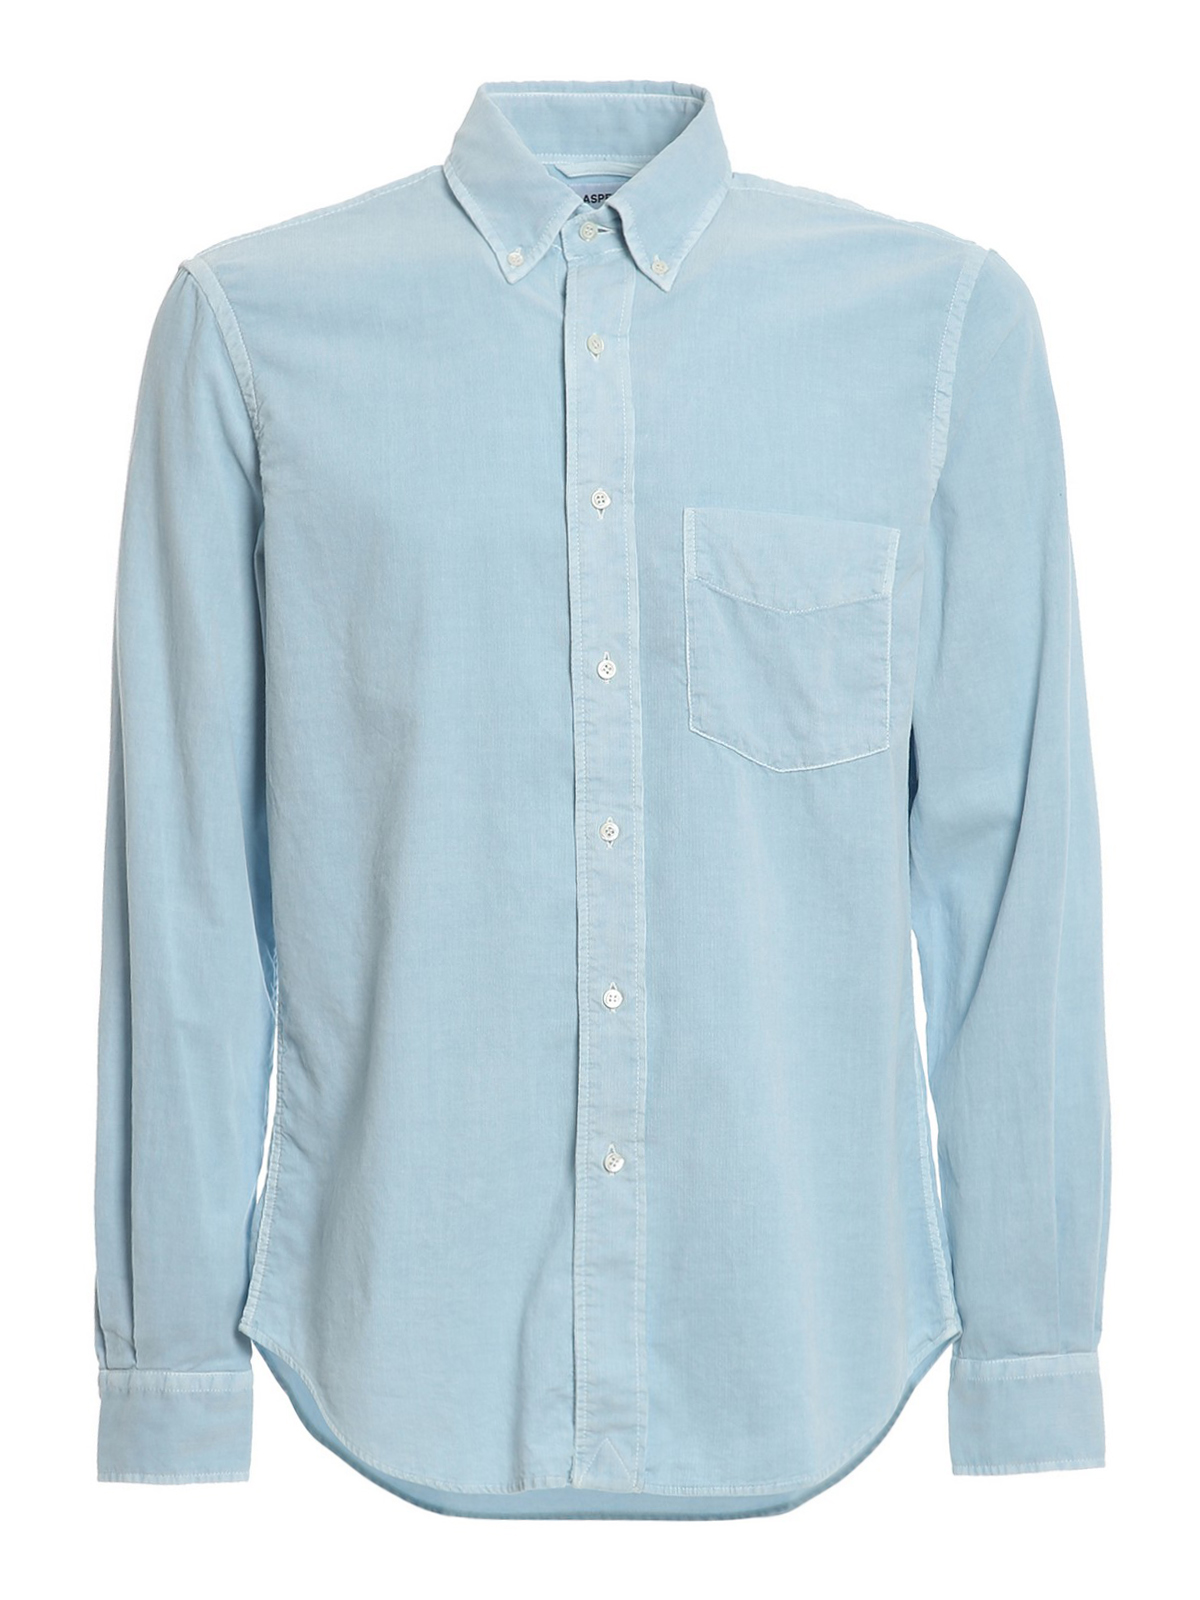 アスペジ レディース 85098 BLUE corduroy long-sleeve shirt シャツ トップス 【メール便なら送料無料】 シャツ